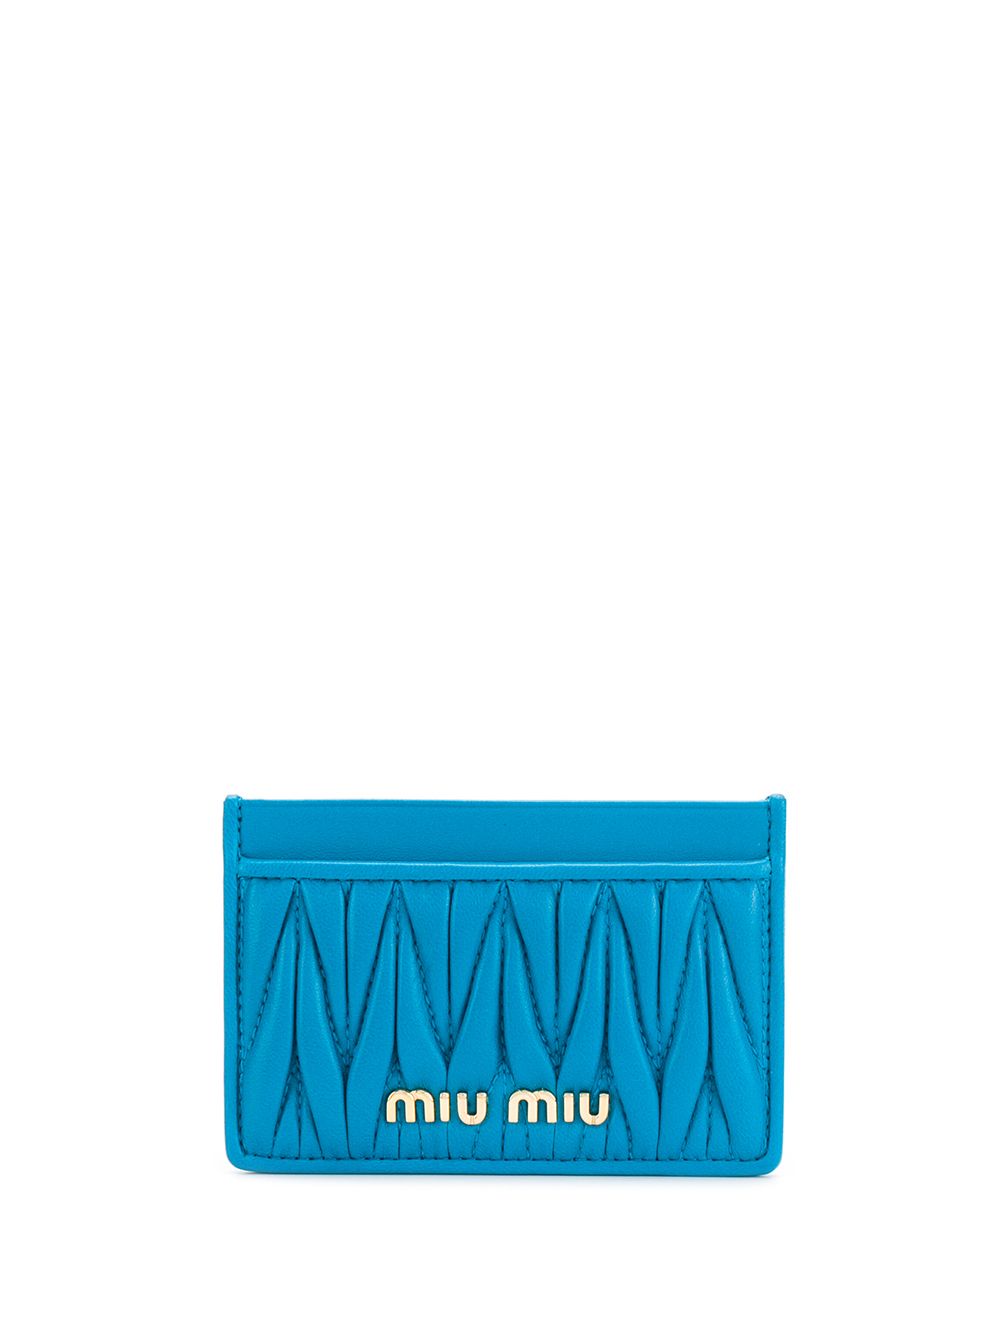 фото Miu Miu декорированный кошелек